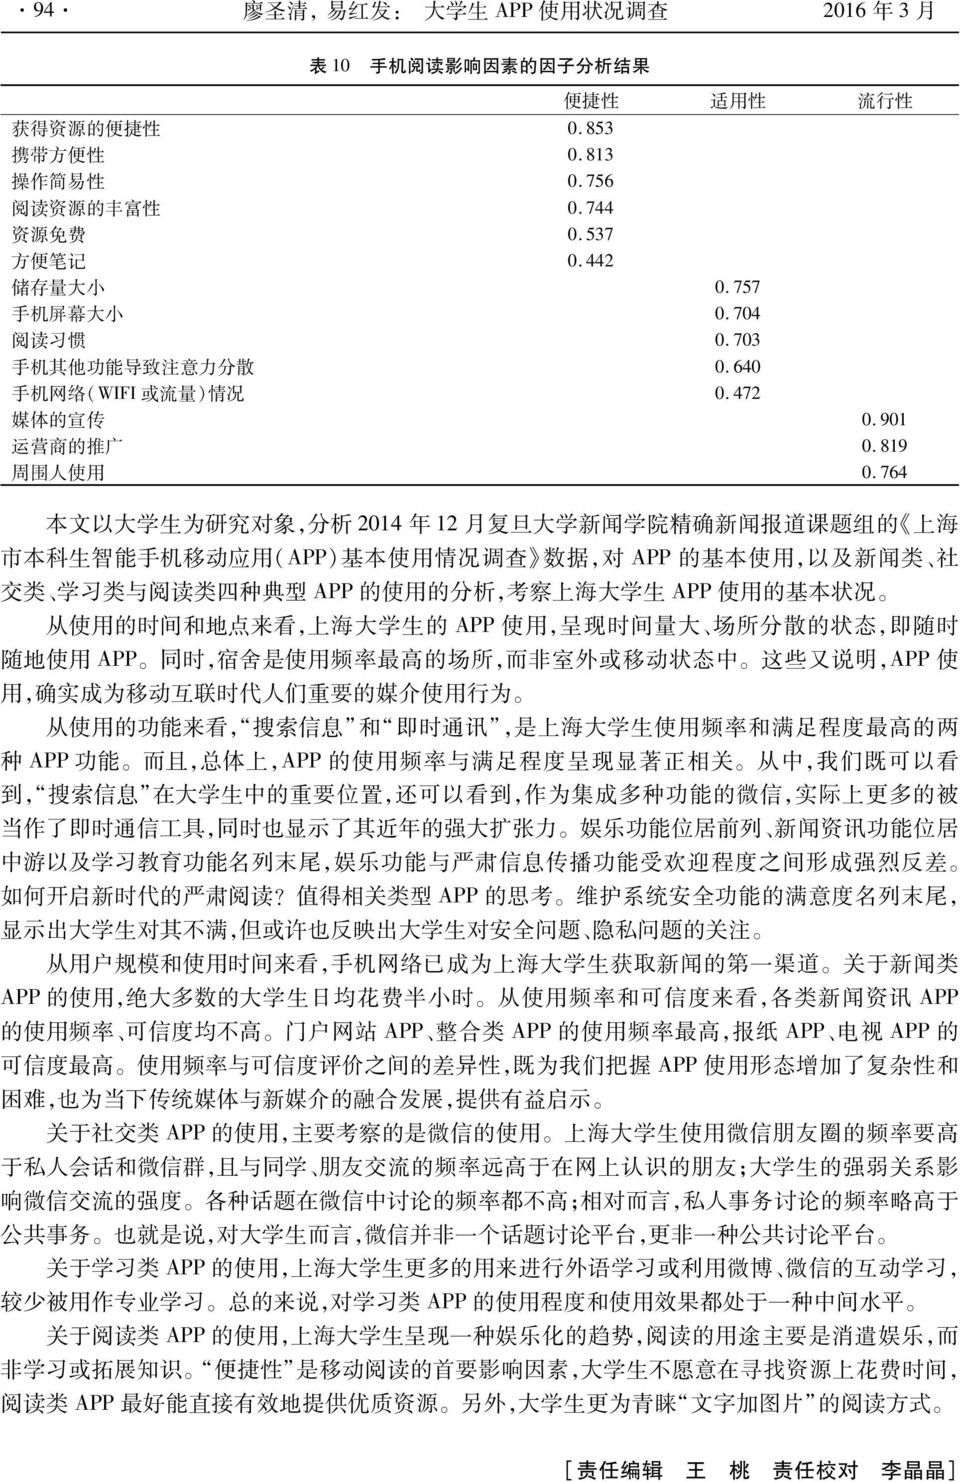 764 本 文 以 大 学 生 为 研 究 对 象, 分 析 2014 年 12 月 复 旦 大 学 新 闻 学 院 精 确 新 闻 报 道 课 题 组 的 上 海 市 本 科 生 智 能 手 机 移 动 应 用 (APP) 基 本 使 用 情 况 调 查 数 据, 对 APP 的 基 本 使 用, 以 及 新 闻 类 社 交 类 学 习 类 与 阅 读 类 四 种 典 型 APP 的 使 用